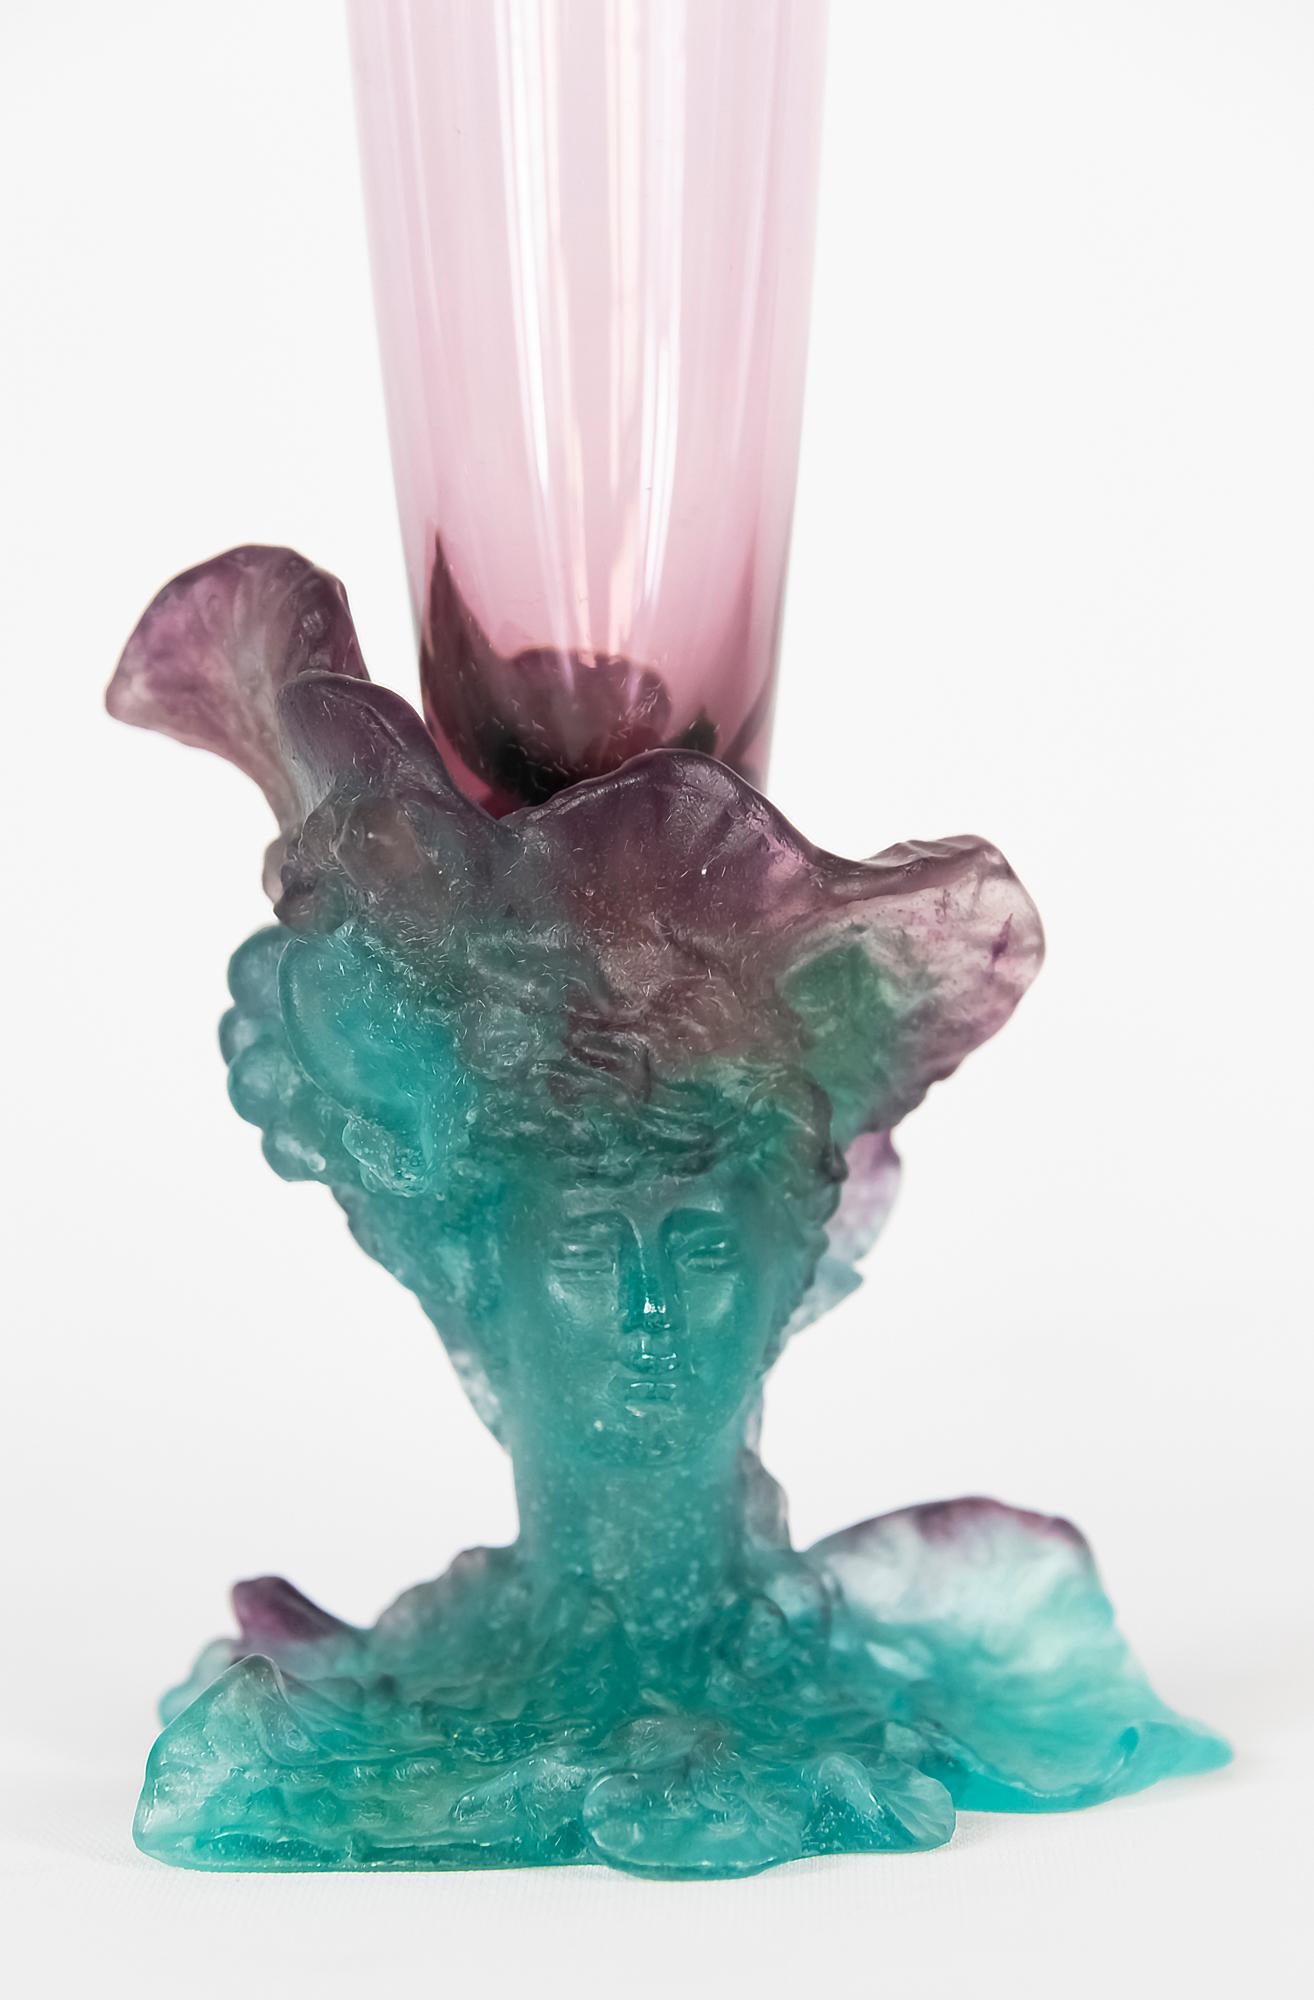 Große französische Daum Bacchus-Vase mit amethystfarbenem Glas und grünem Pâte de verre Boden, dekoriert mit einem Frauengesicht, Trauben und Blättern. Um 2000.
Signiert 